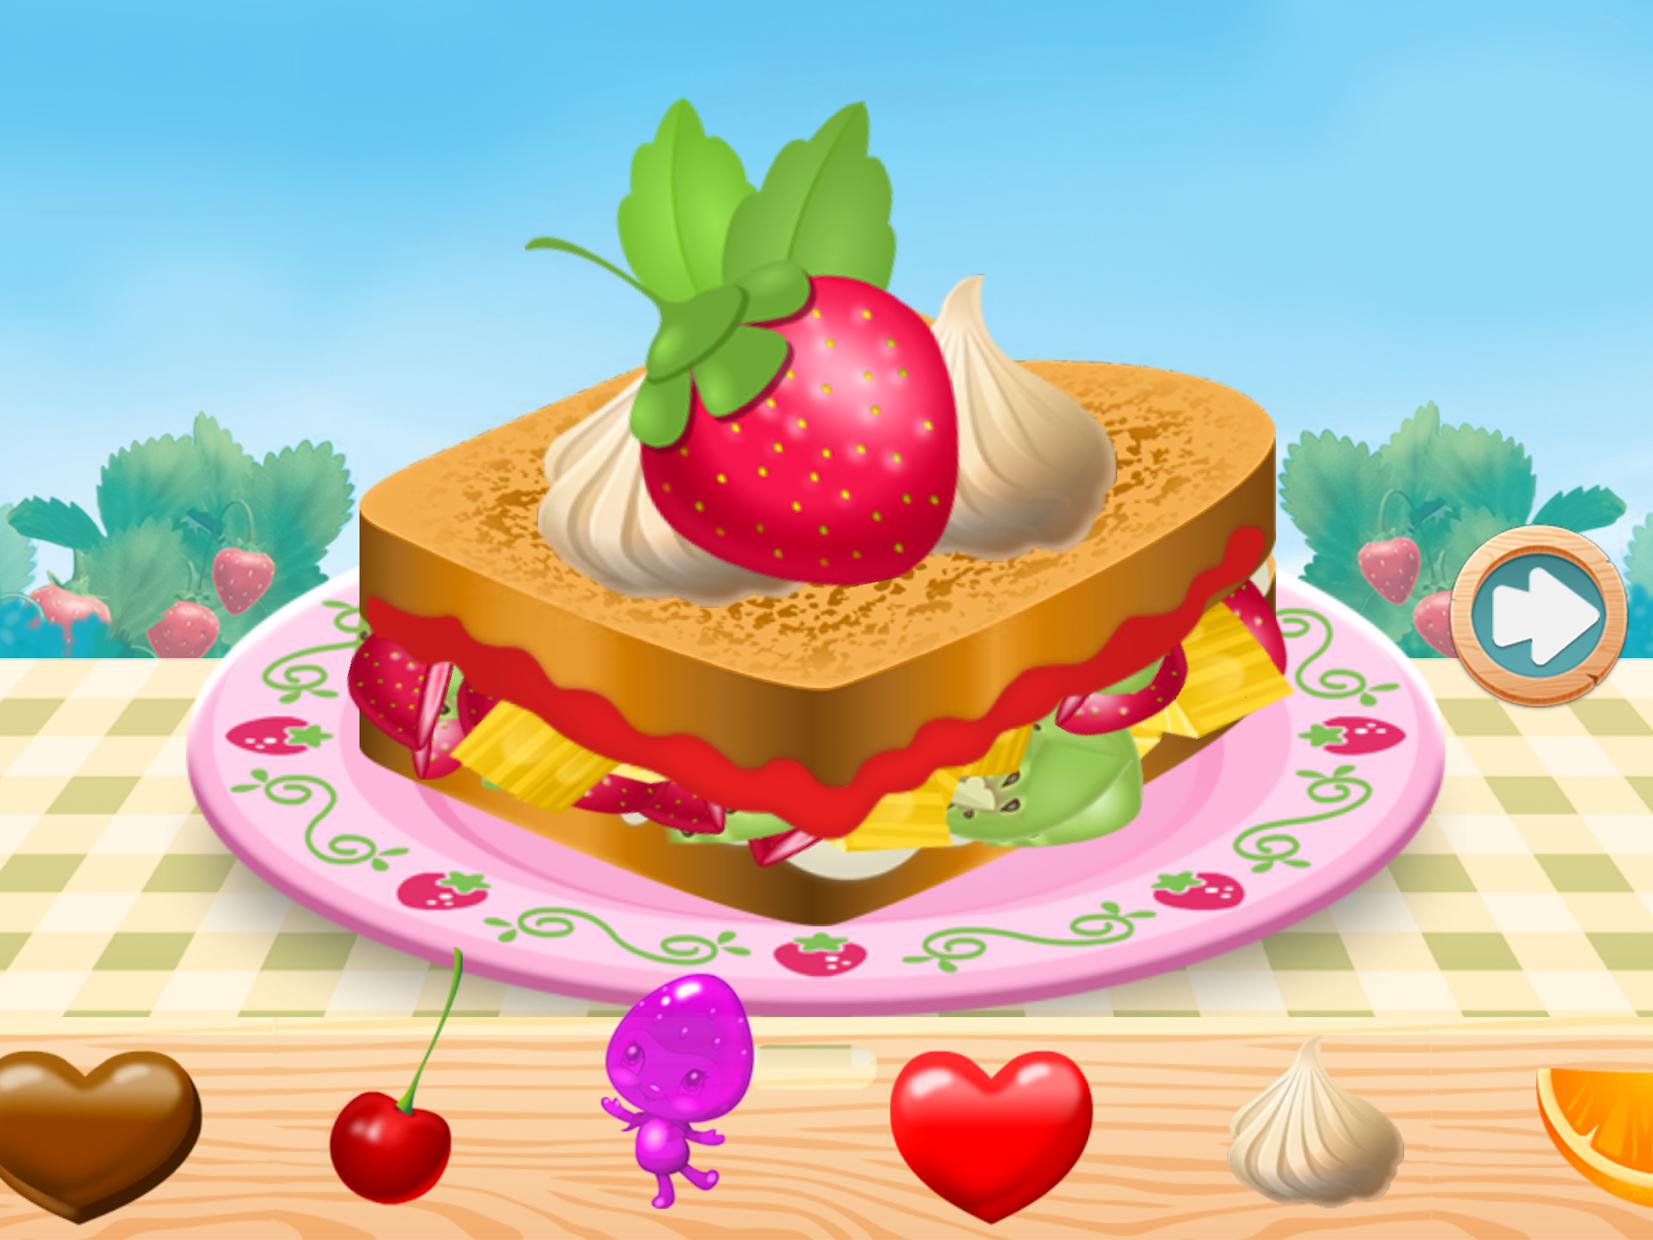 草莓甜心美食博览会－烹饪大赛_截图_3